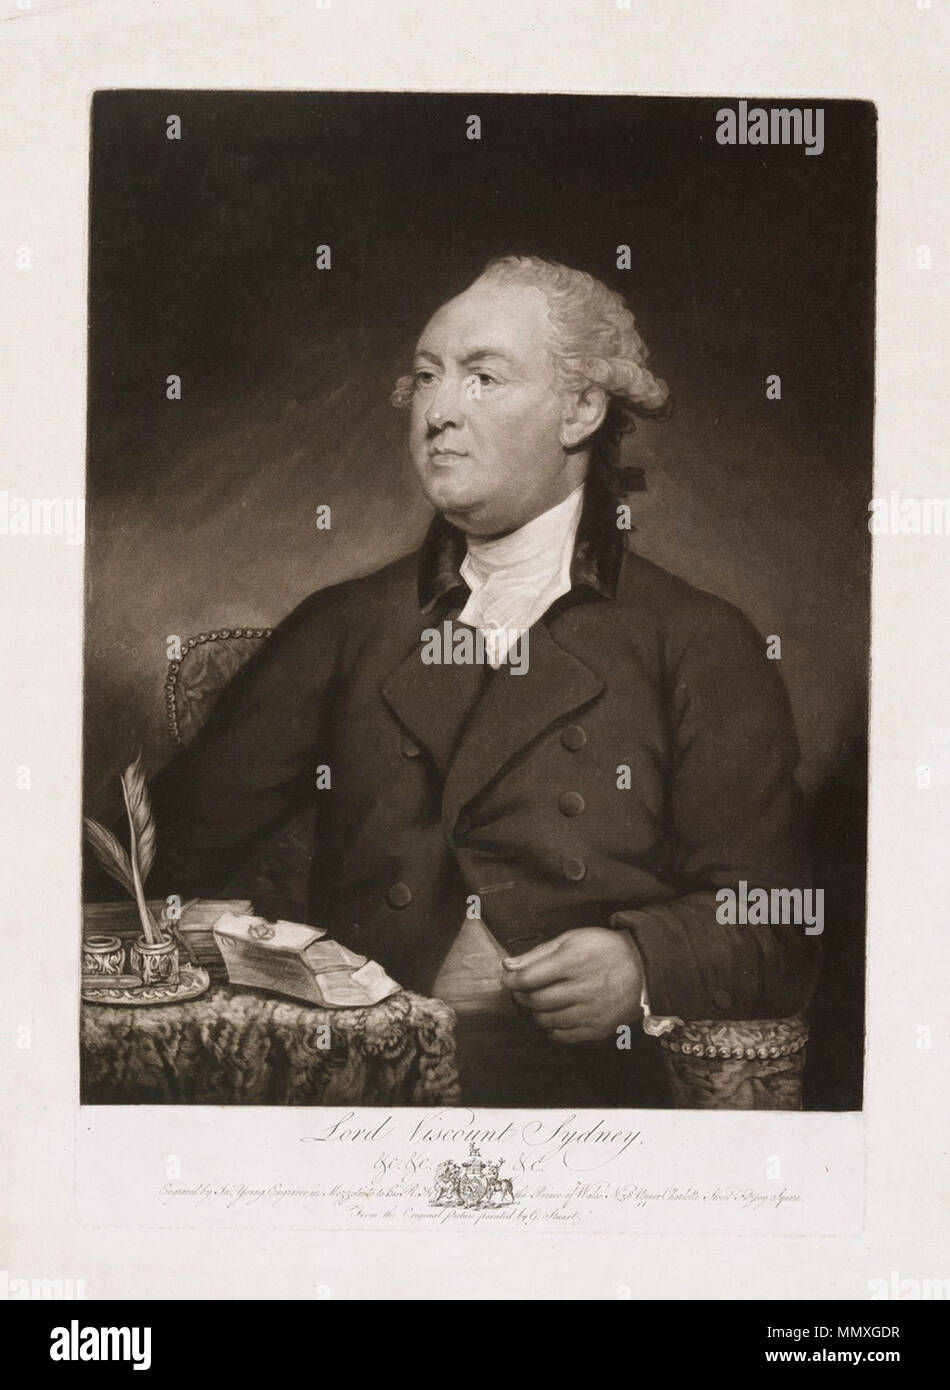 . Schabkunst von Thomas Townshend, 1. Viscount Sydney (1732-1800) Nach einem Portrait von Gilbert Stuart. Die sitter in halber dargestellt ist - Länge, in einem gepolsterten Sessel, verziert mit kleinen Nägeln sitzt, sein Körper ist fast voll - Front mit dem Kopf und Augen drehte sich drei Viertel der Linken. Er trägt einen dunklen Mantel mit Kragen aus Samt, seinen Mantel über der Brust geknöpft, aber unten geöffnet und zeigt eine Weste. Sein Vorrat und Shirt Rüschen sind von weißen Musselin und seine Perücke oder Haar ist gepudert. Sein Gesicht ist plump und seinen Teint "beefy", zum Ausdruck zu bringen seelische und körperliche Aktivität mit Stockfoto